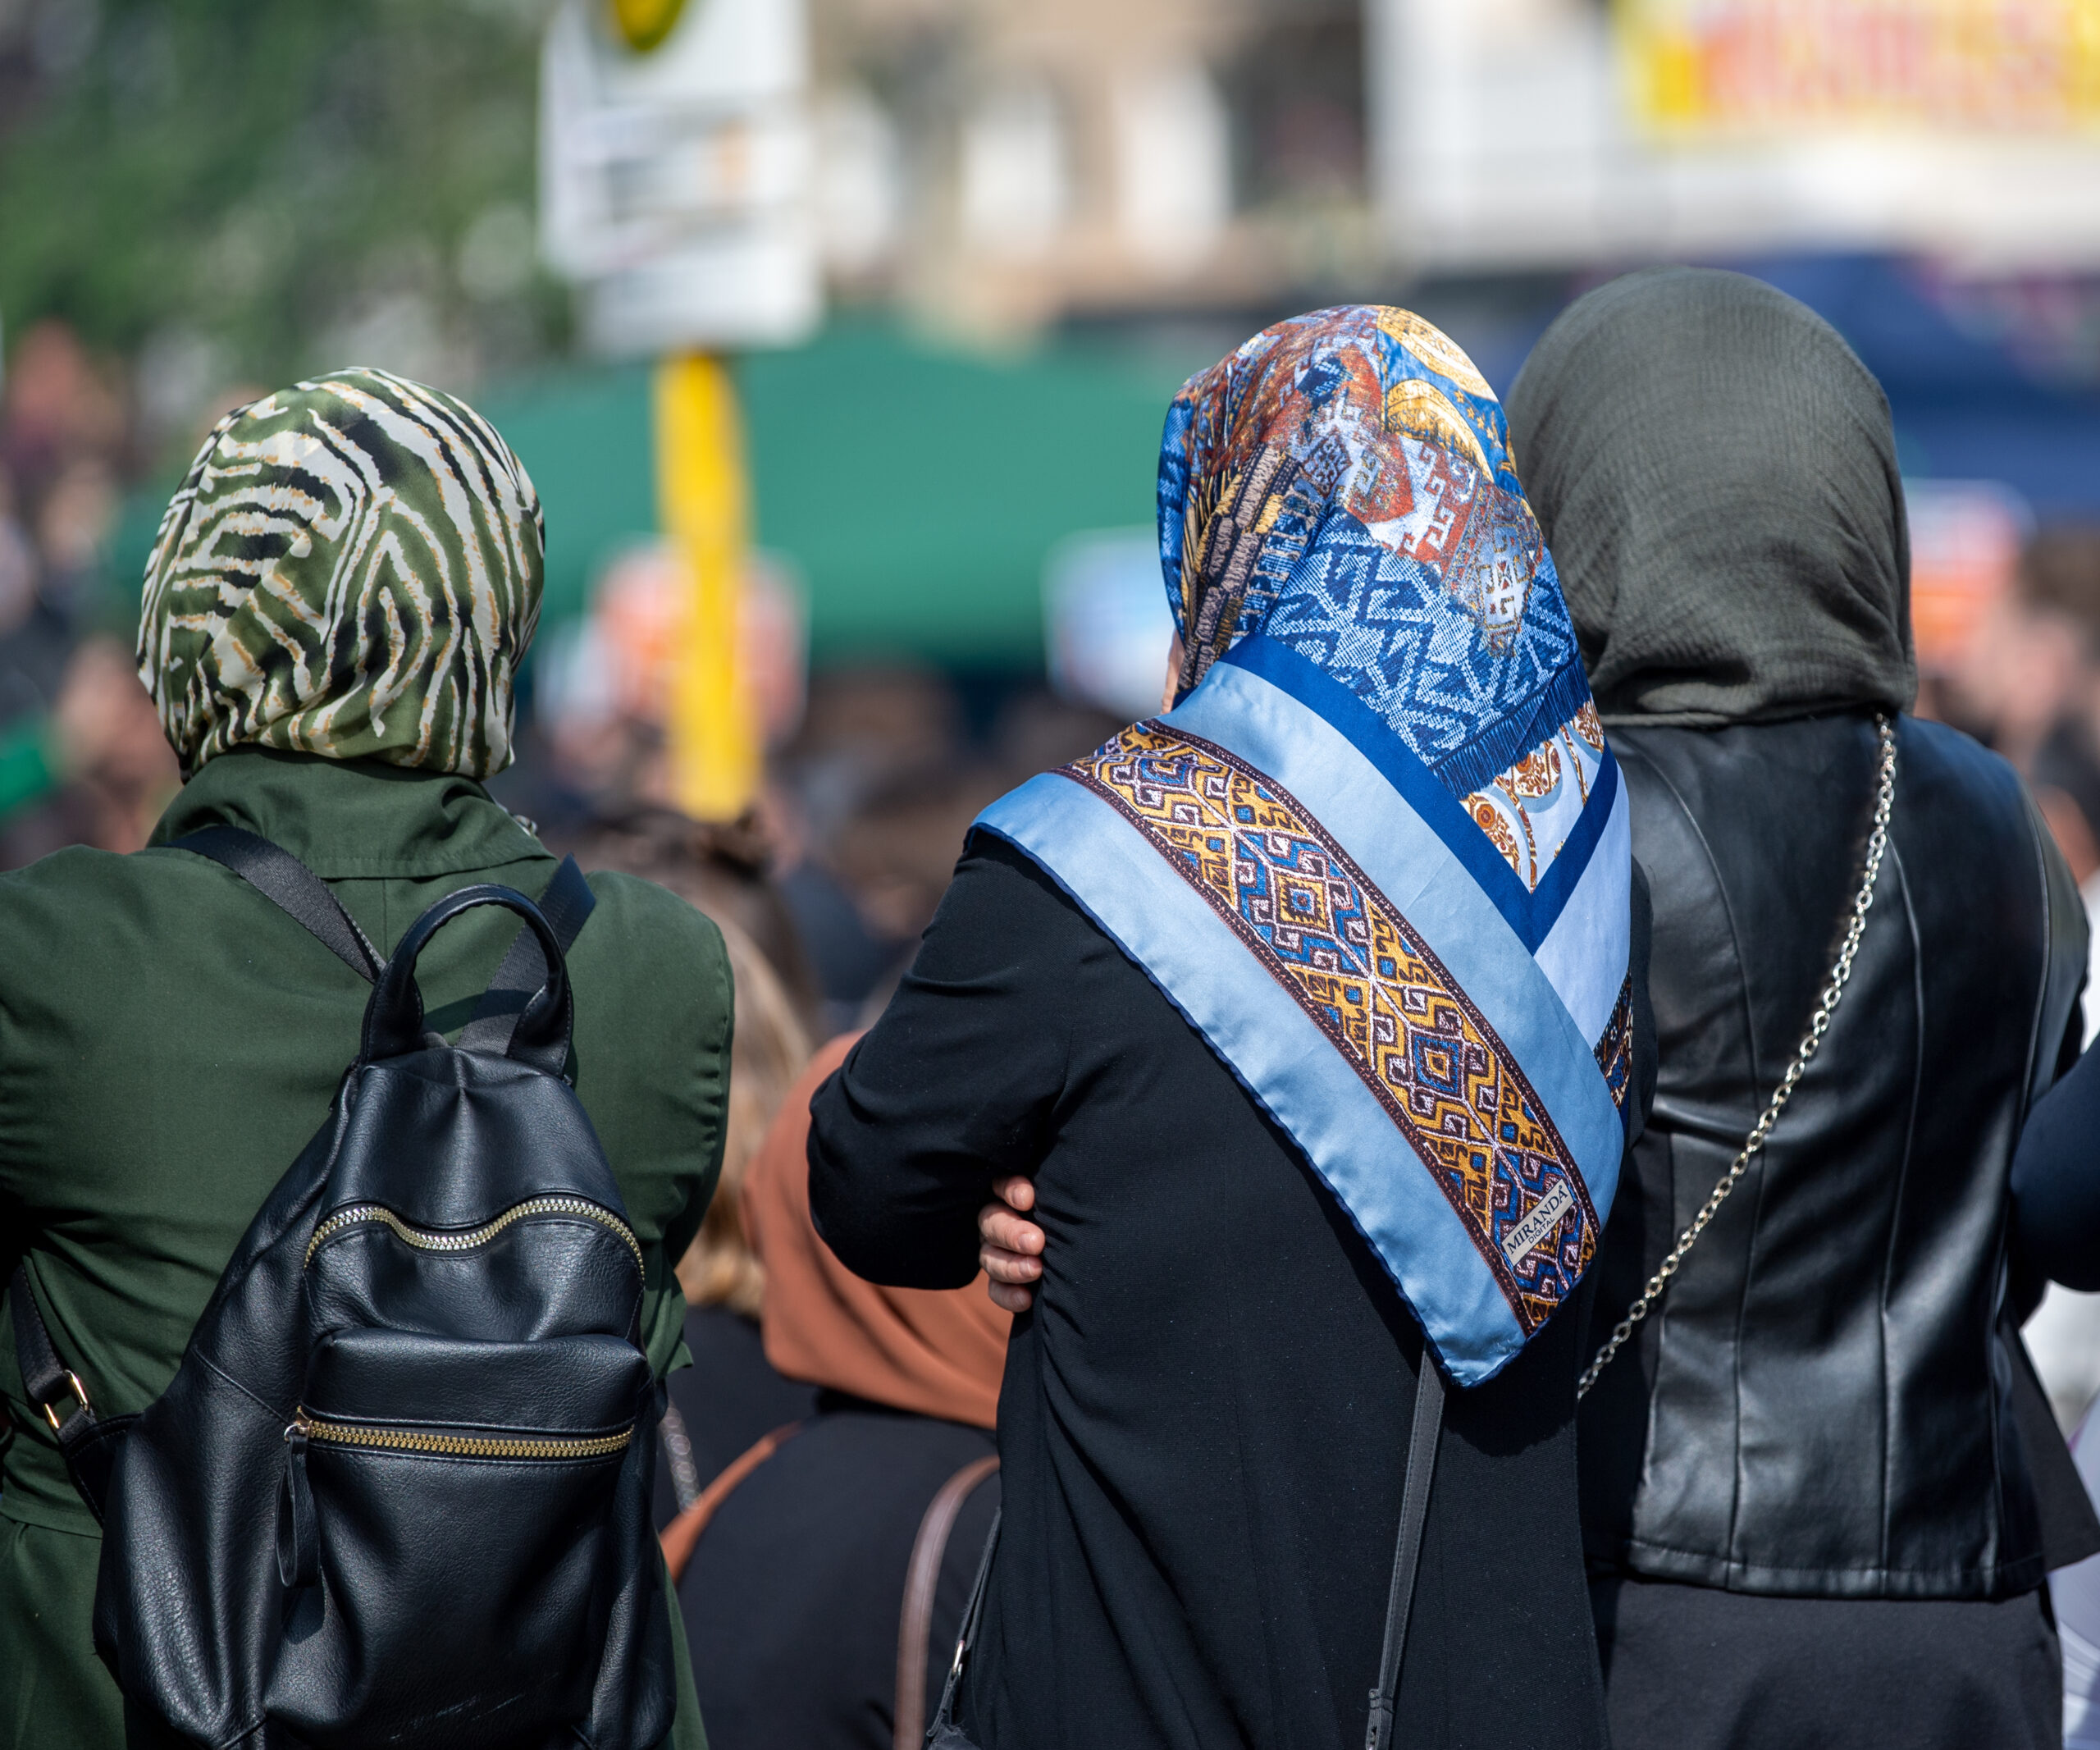 Muslimische Frauen berichten, man würde sie nicht als selbstbestimmt wahrnehmen.